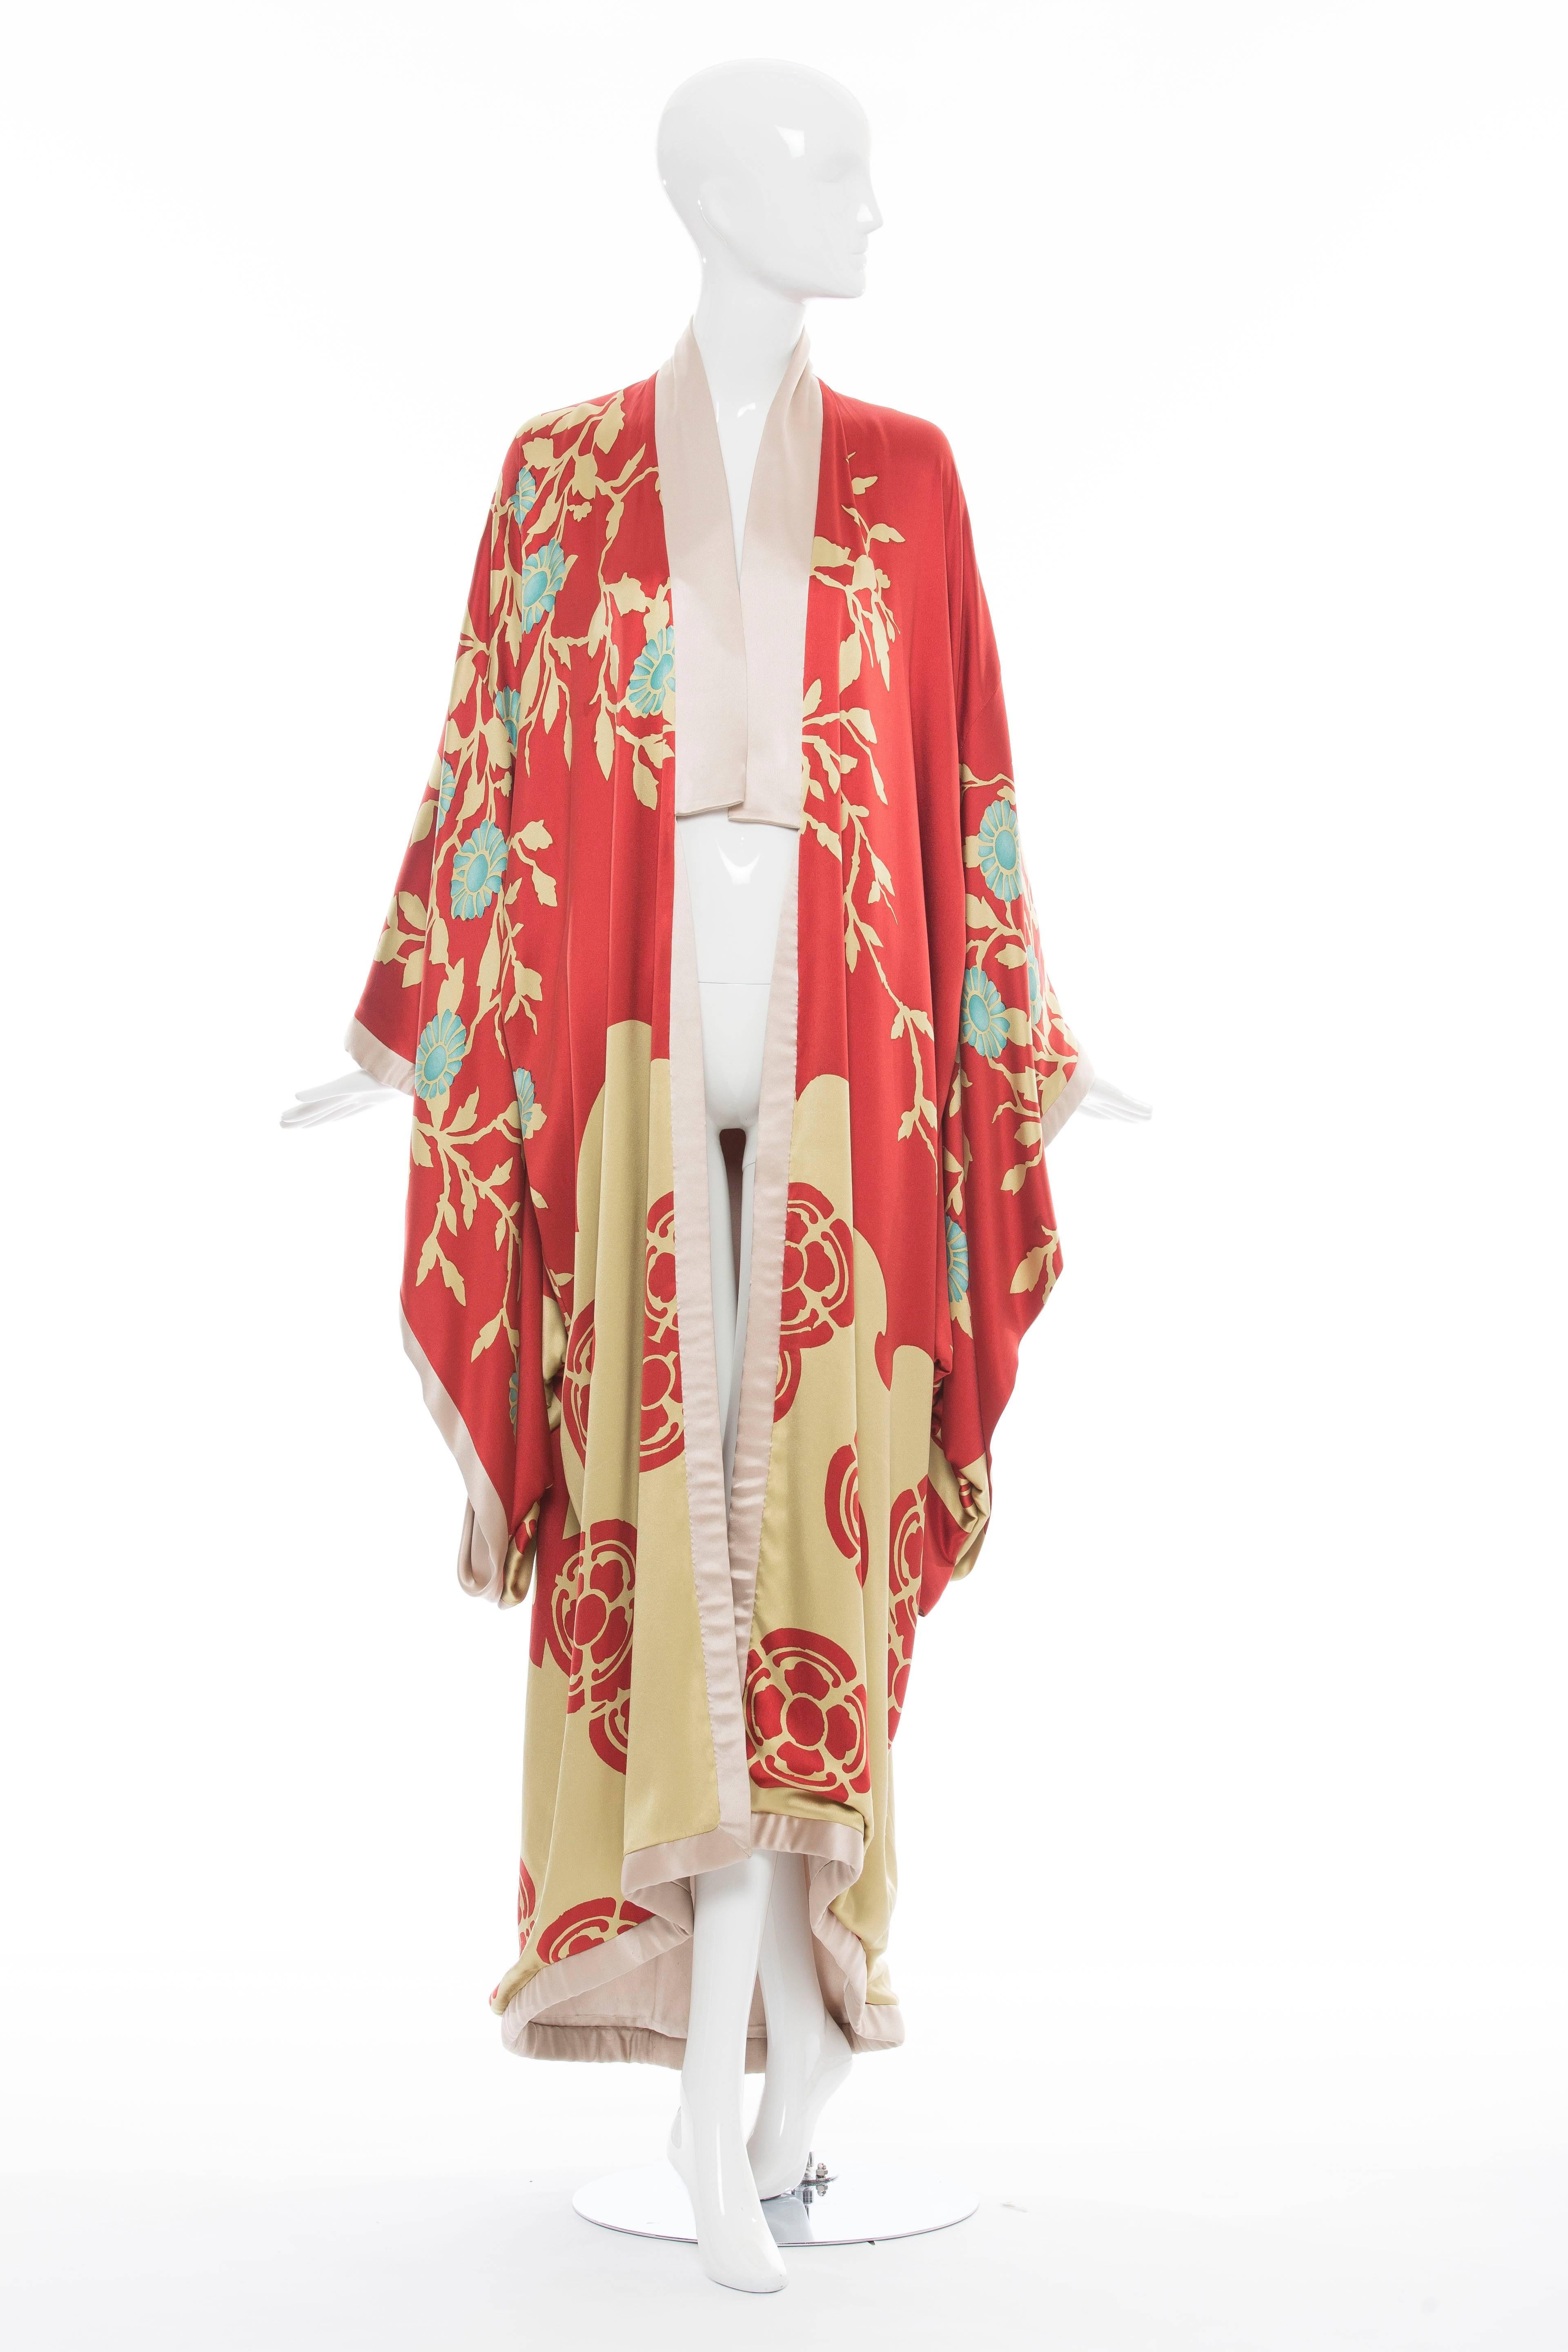 Tom Ford pour Gucci:: S/S 2003:: kimono en soie pour homme avec revers châle:: drapé aux manches et ouvert sur le devant. 

La robe a été offerte par Tom Ford au Metropolitan Museum of Art en 2004 et est documentée dans le livre Tom Ford à la page